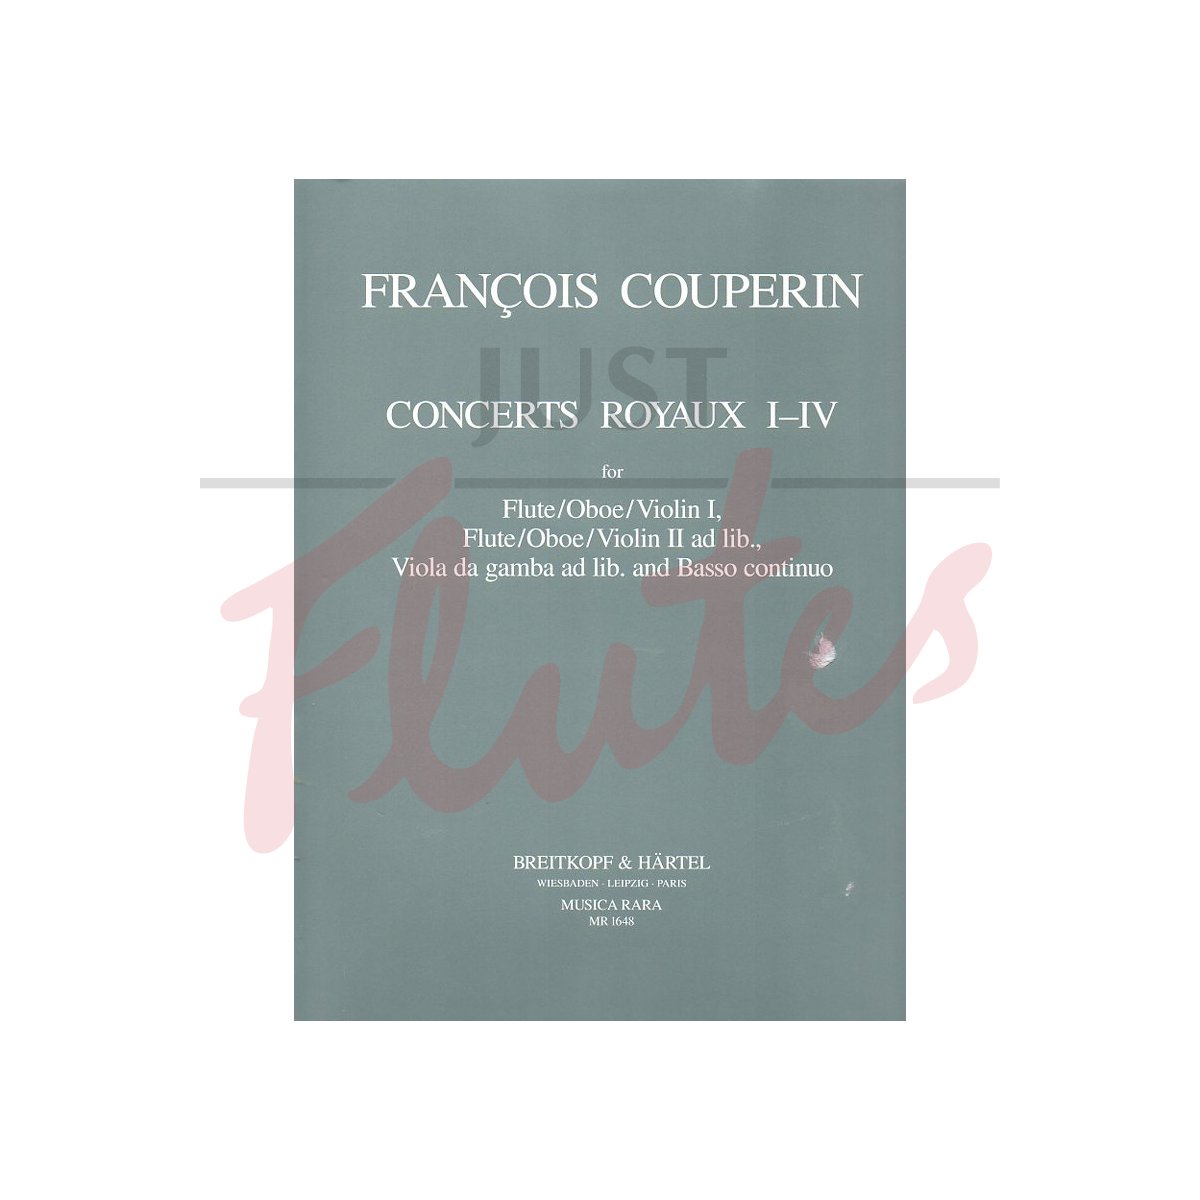 Concerts Royaux 1-4 [Complete]